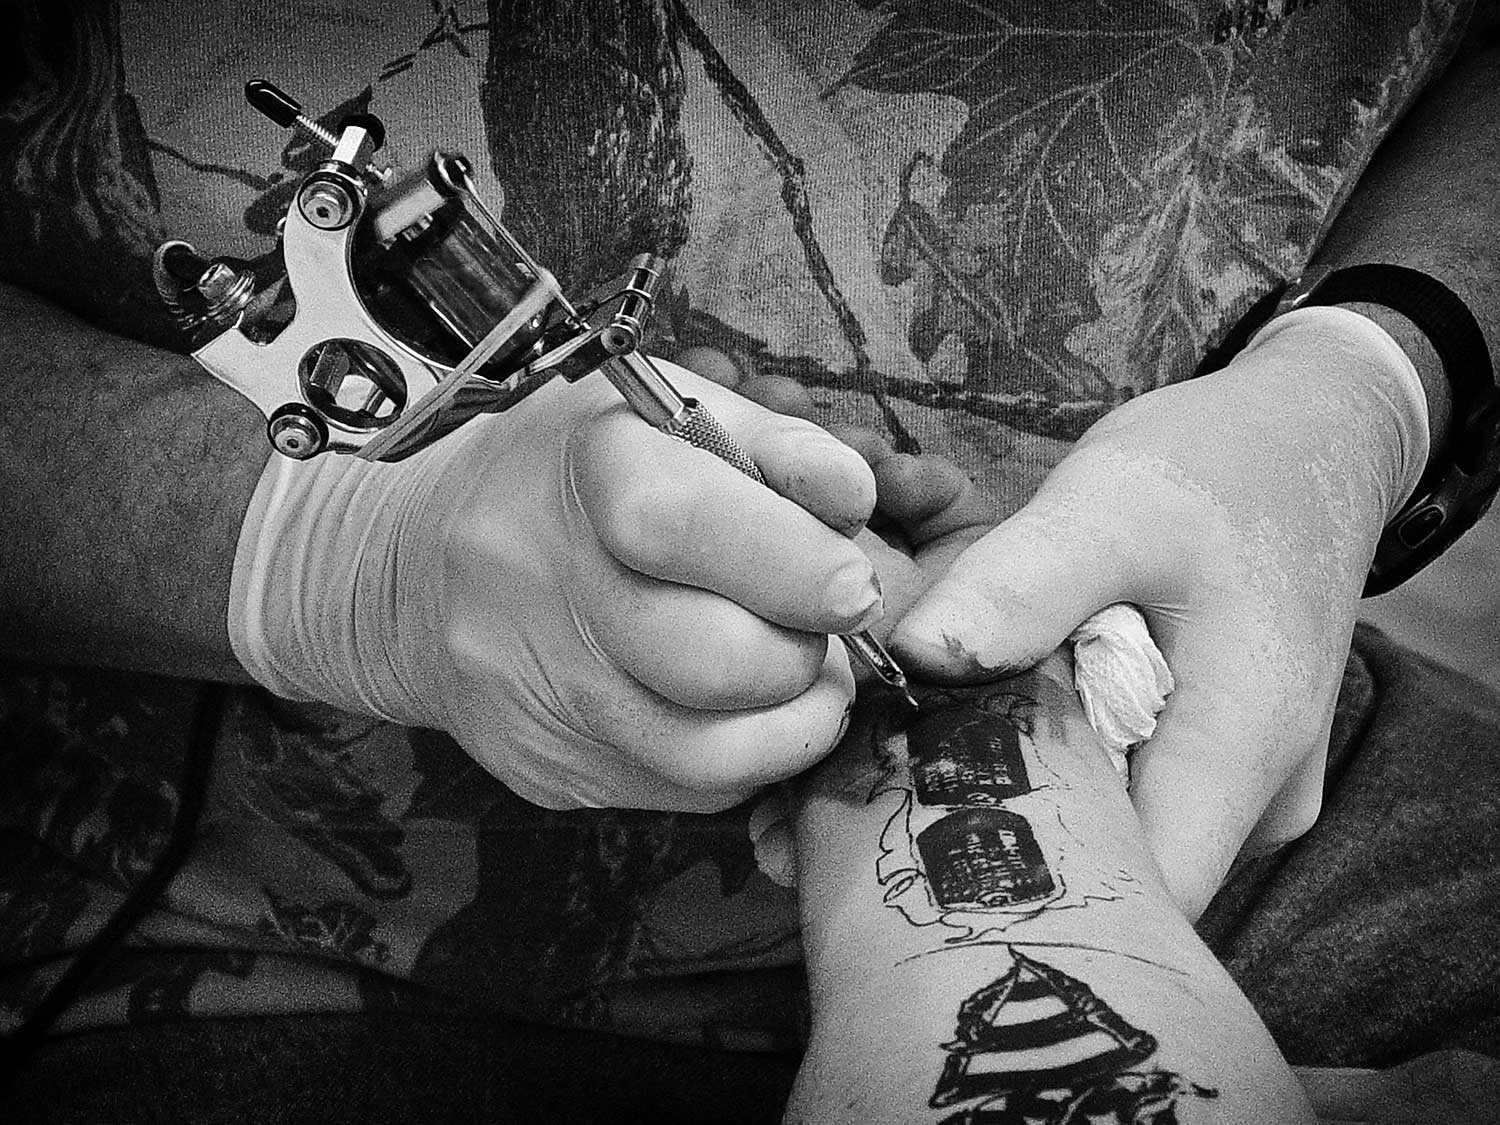 Donnie Silcox tattoos Richard Jones’ dog tags on his forearm at DJ’s Tattoo. photo by Kristi Davis - 2006